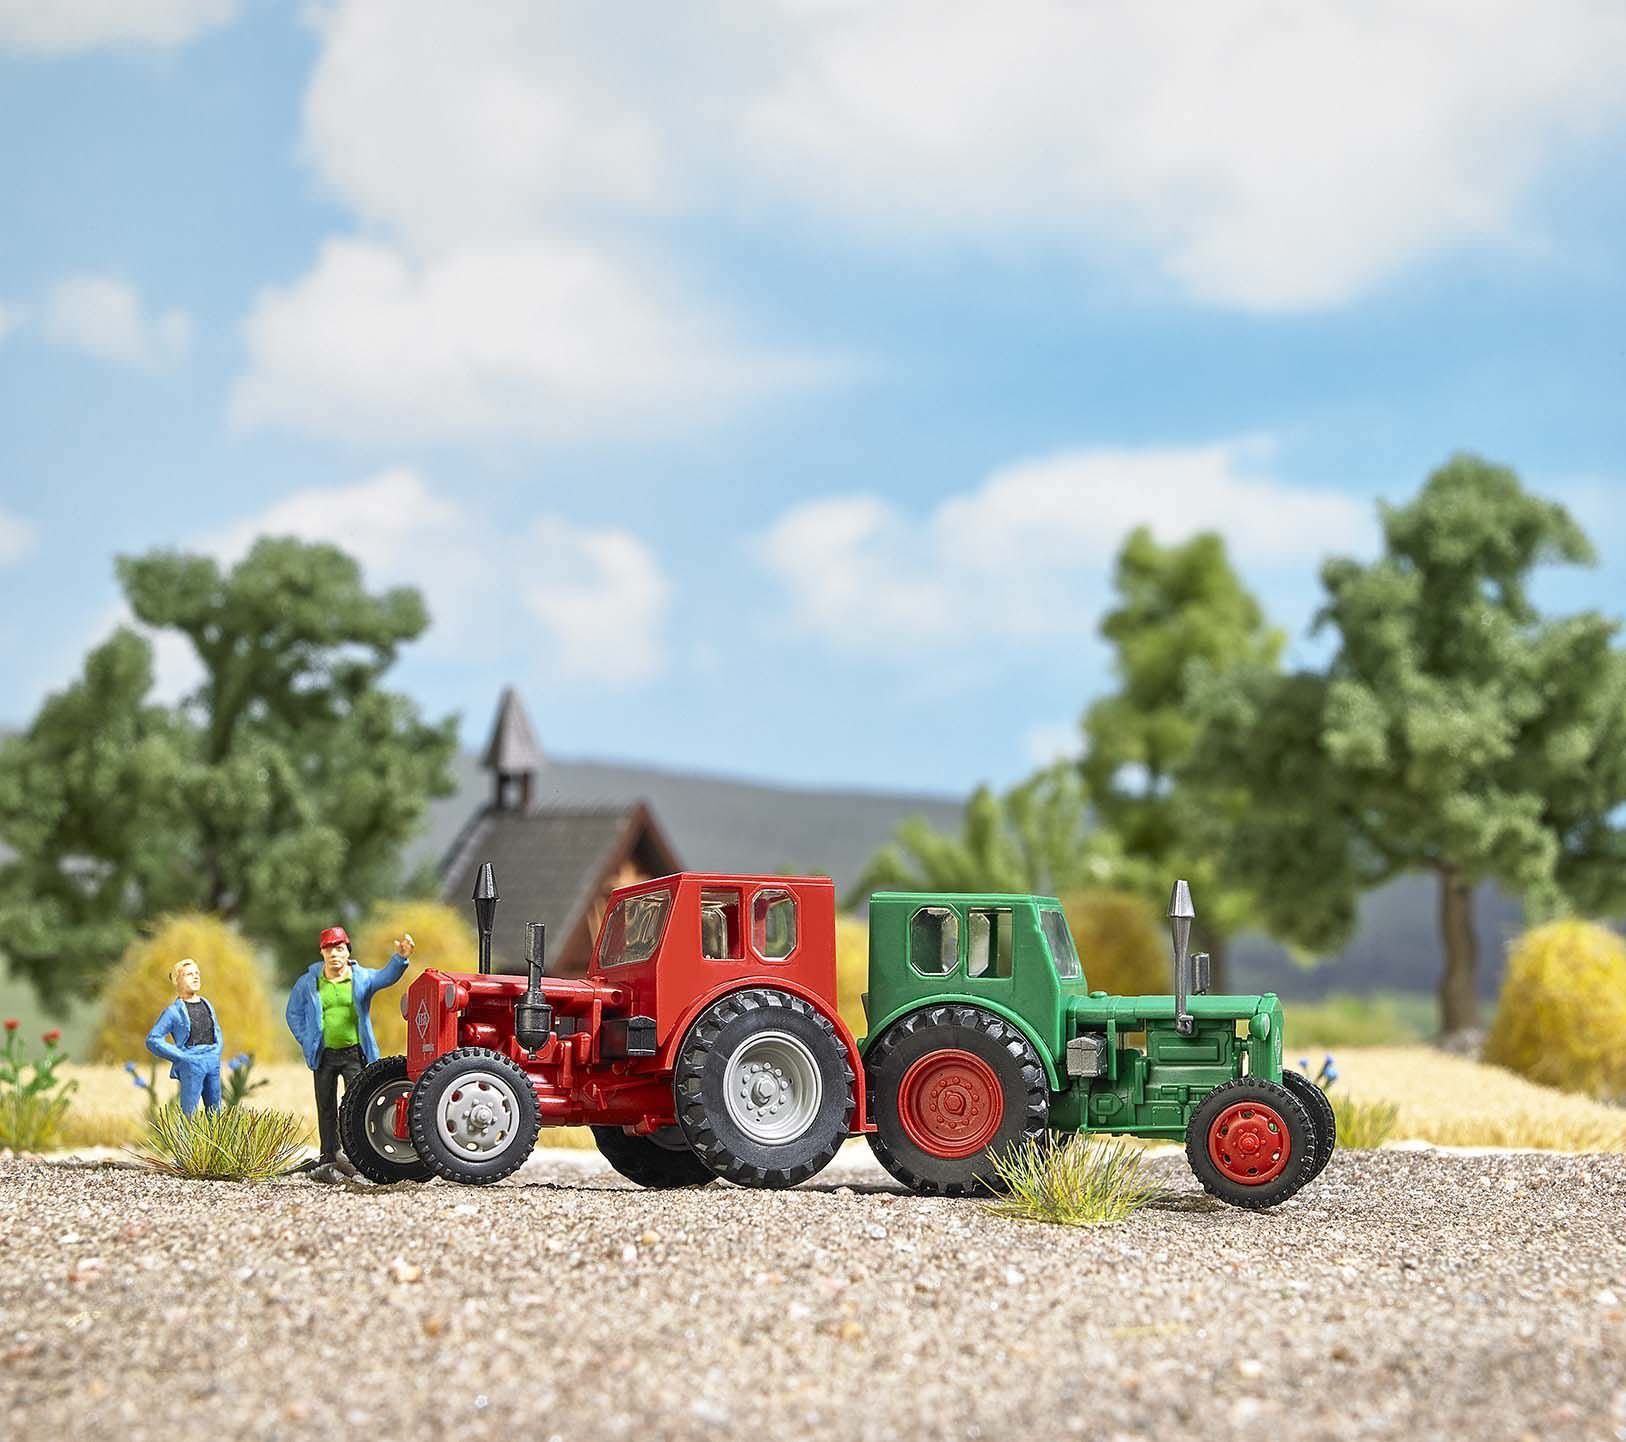 Melhose 210006400 - Traktor Pionier grün/rote Felgen H0 1:87